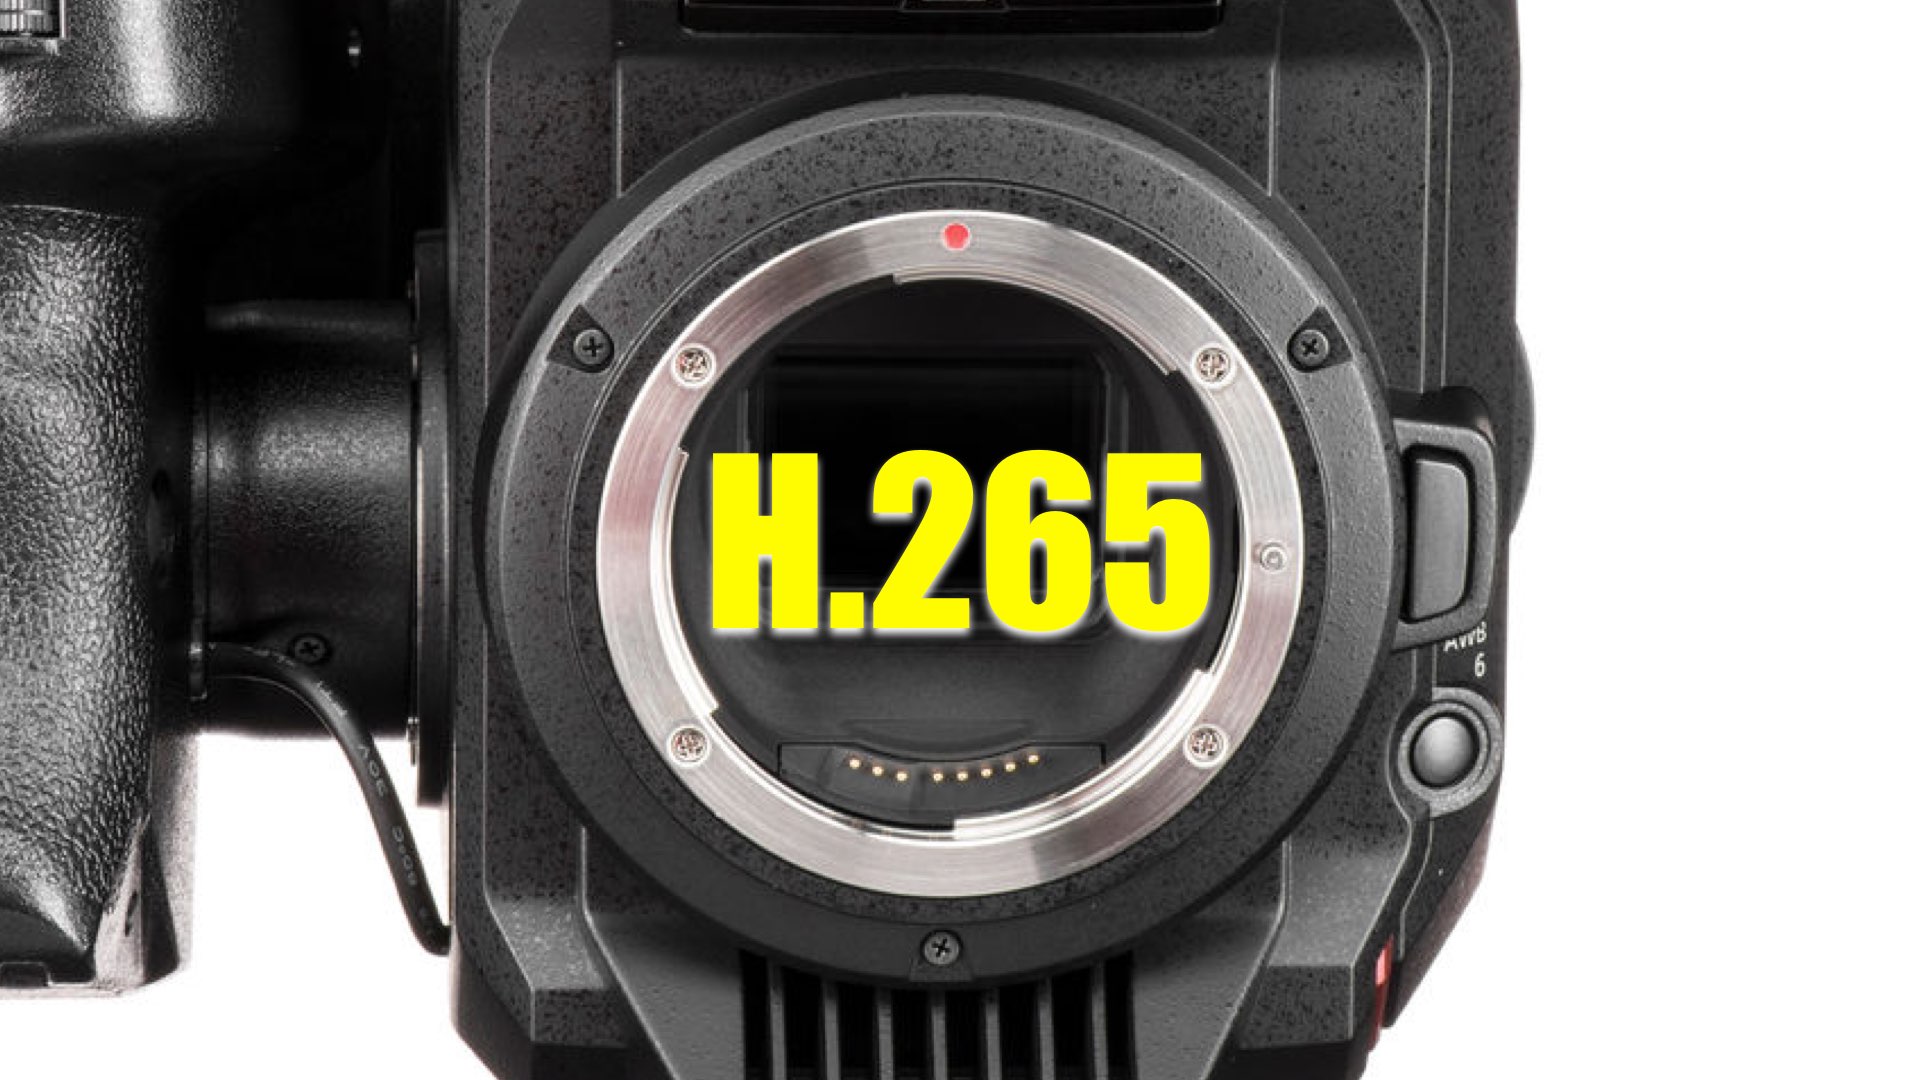 HEVC/H.265 codec in the Panasonic EVA-1